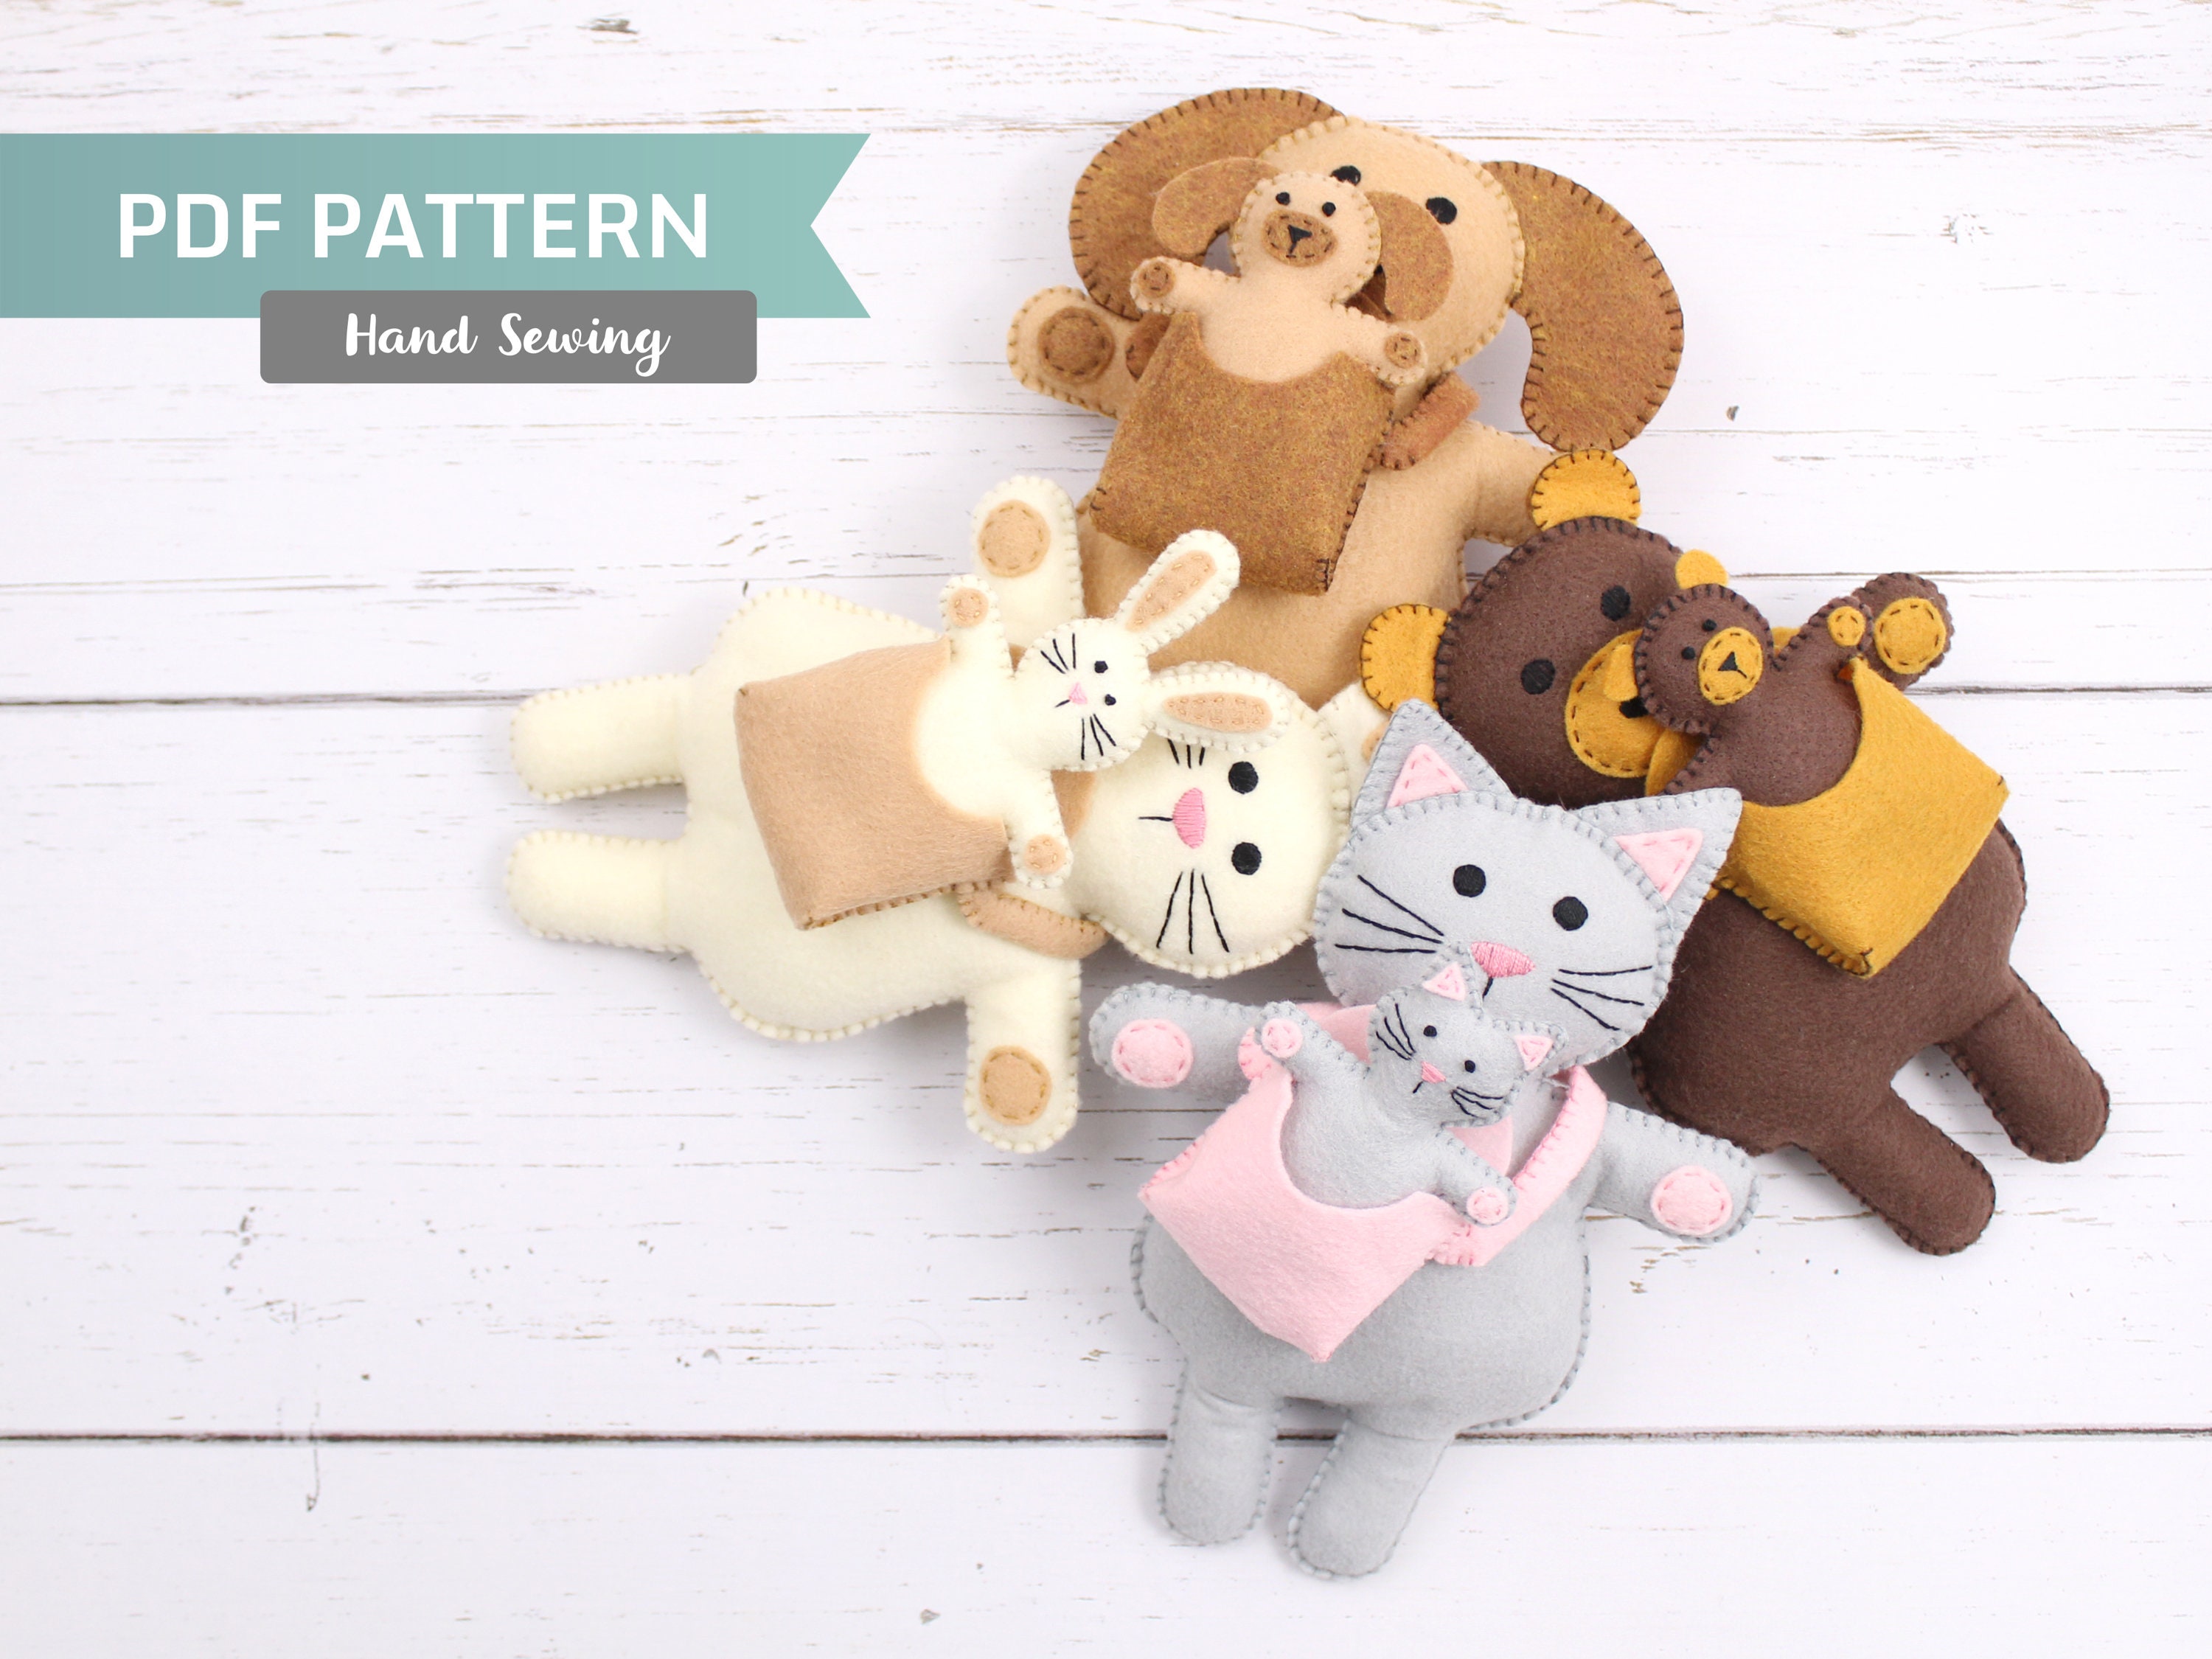 PDF PATTERN - Heart & Home Wool Felt Ornaments Pattern – Snuggly Monkey